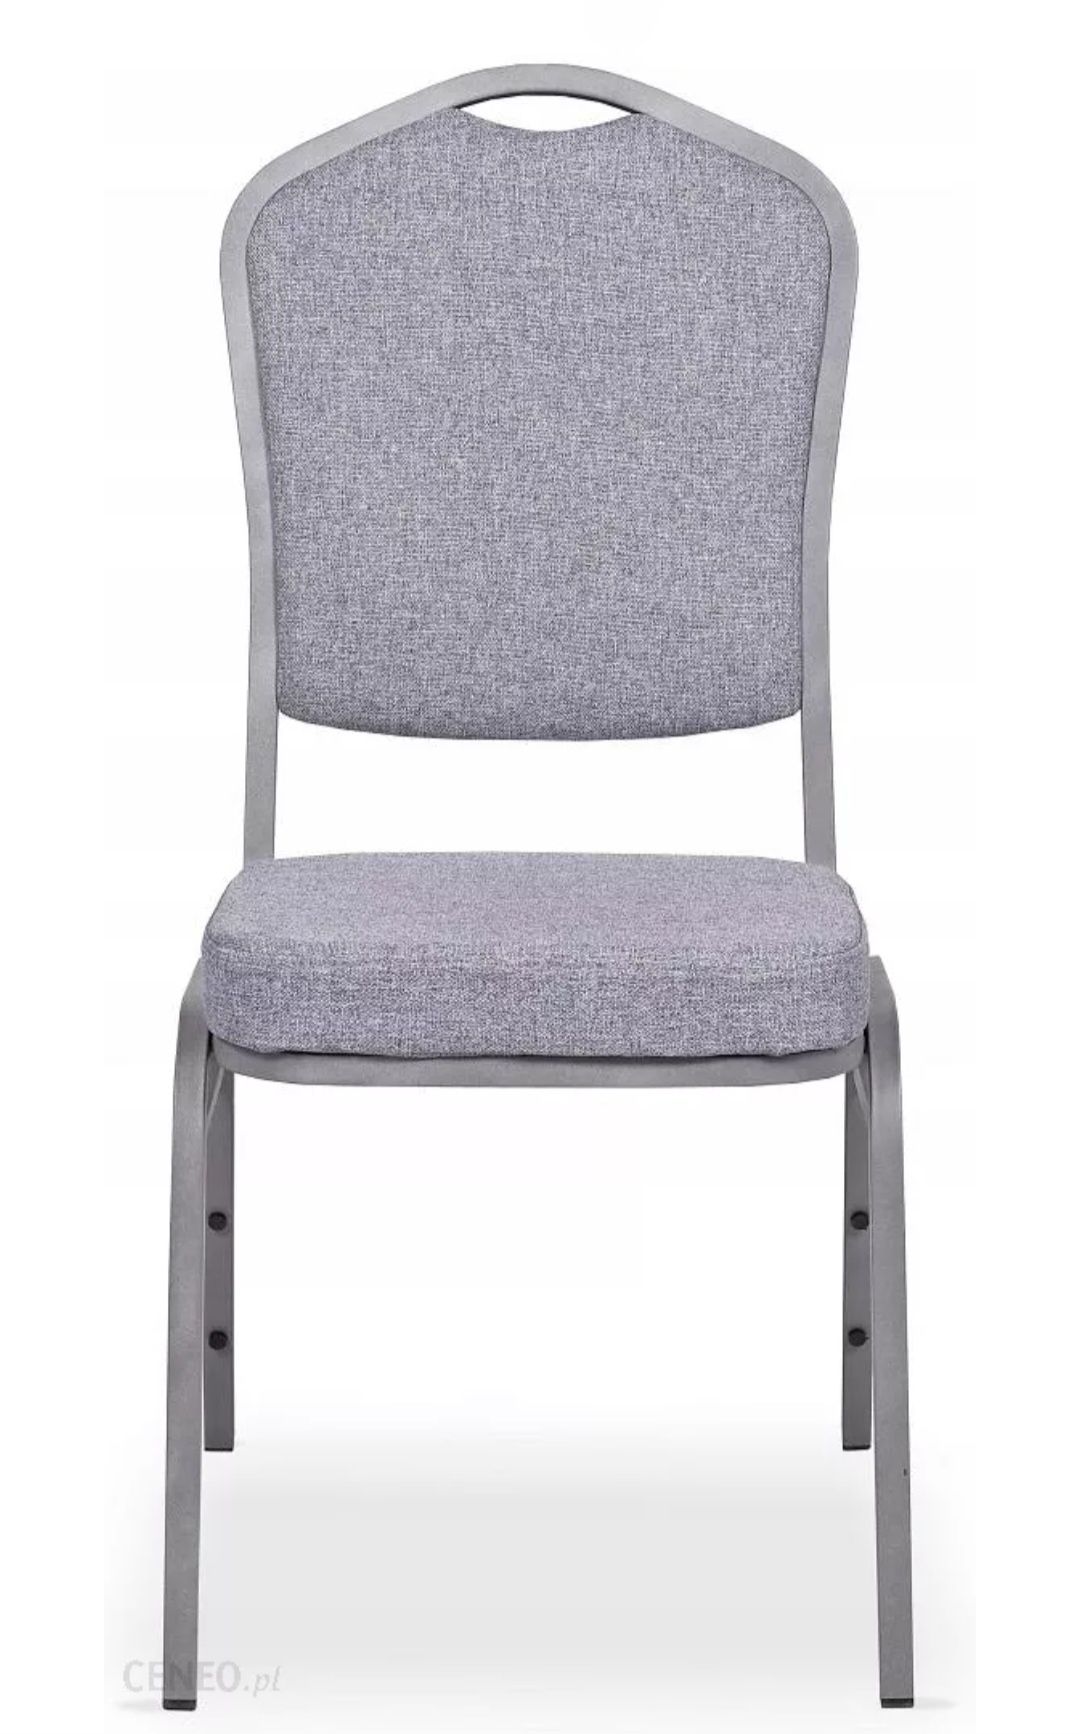 Krzesło metalowe design St 550 Szare